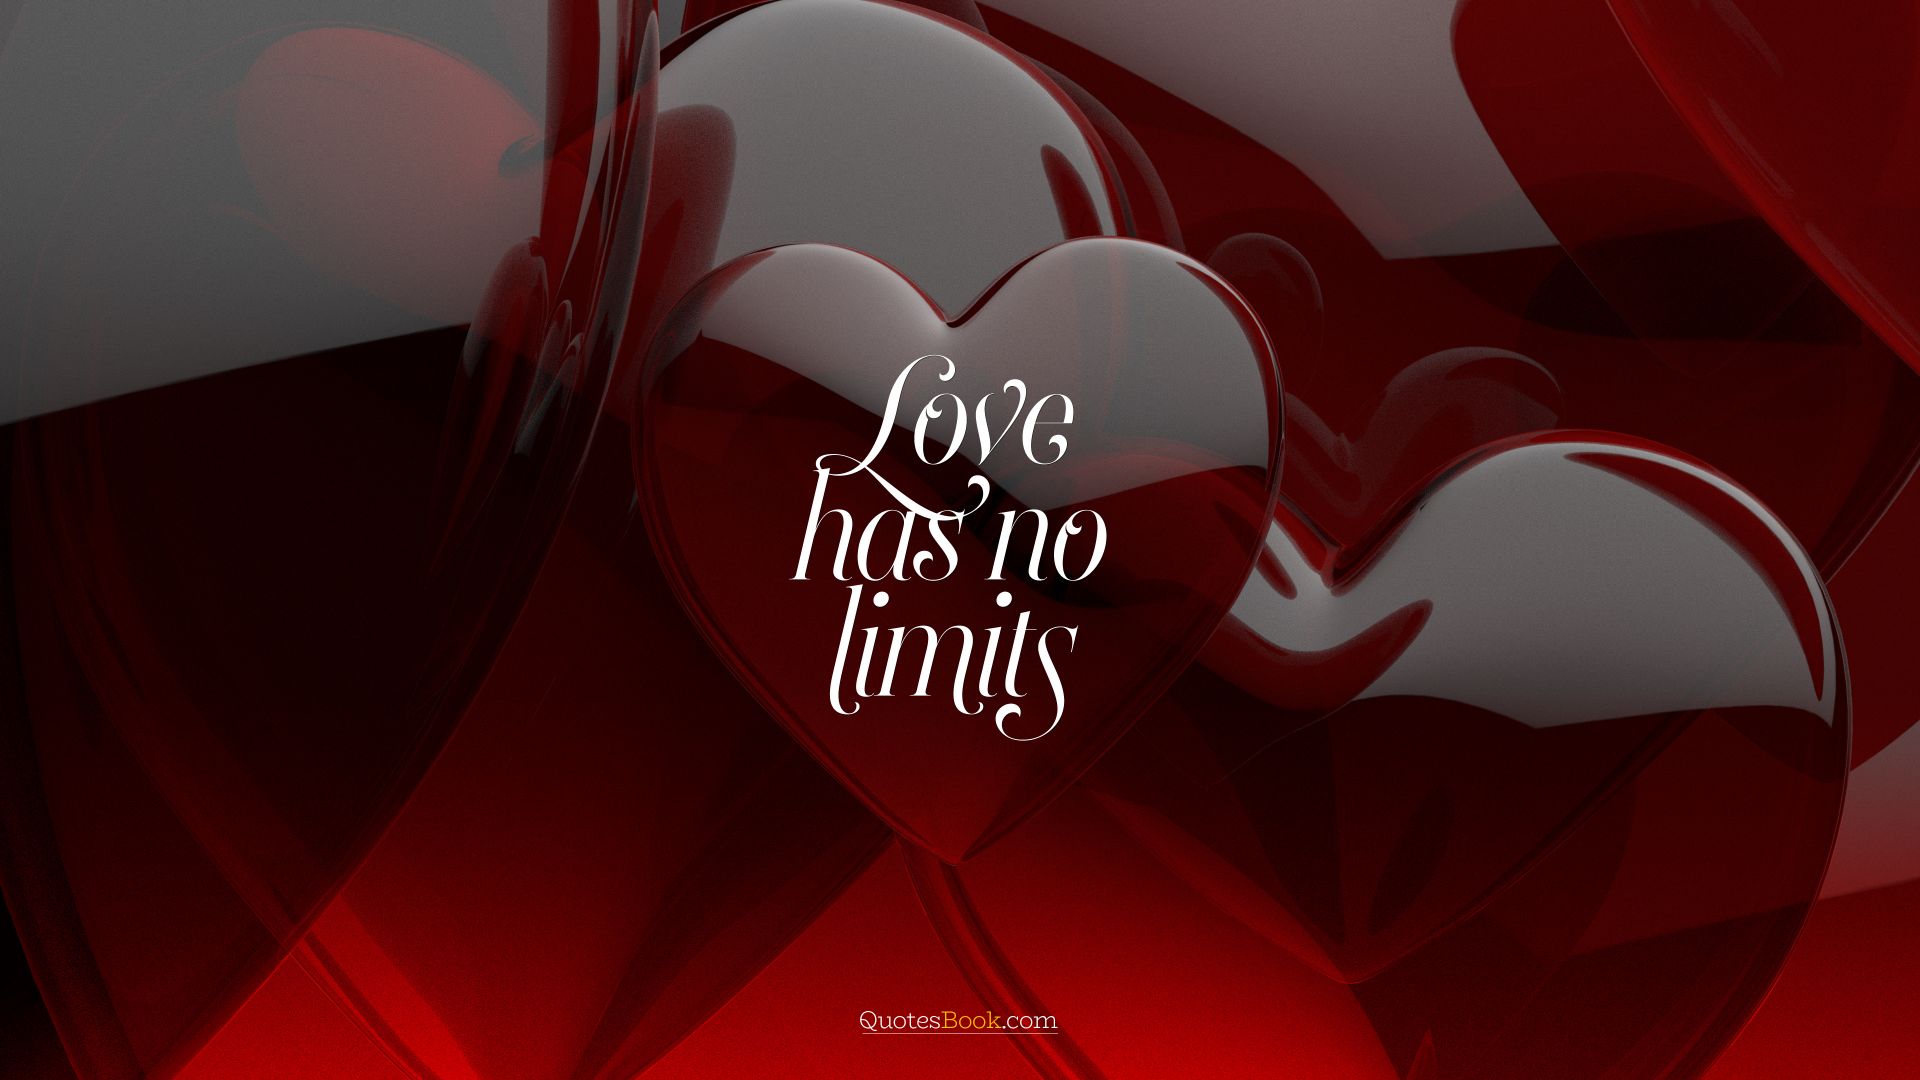 Love has no limits